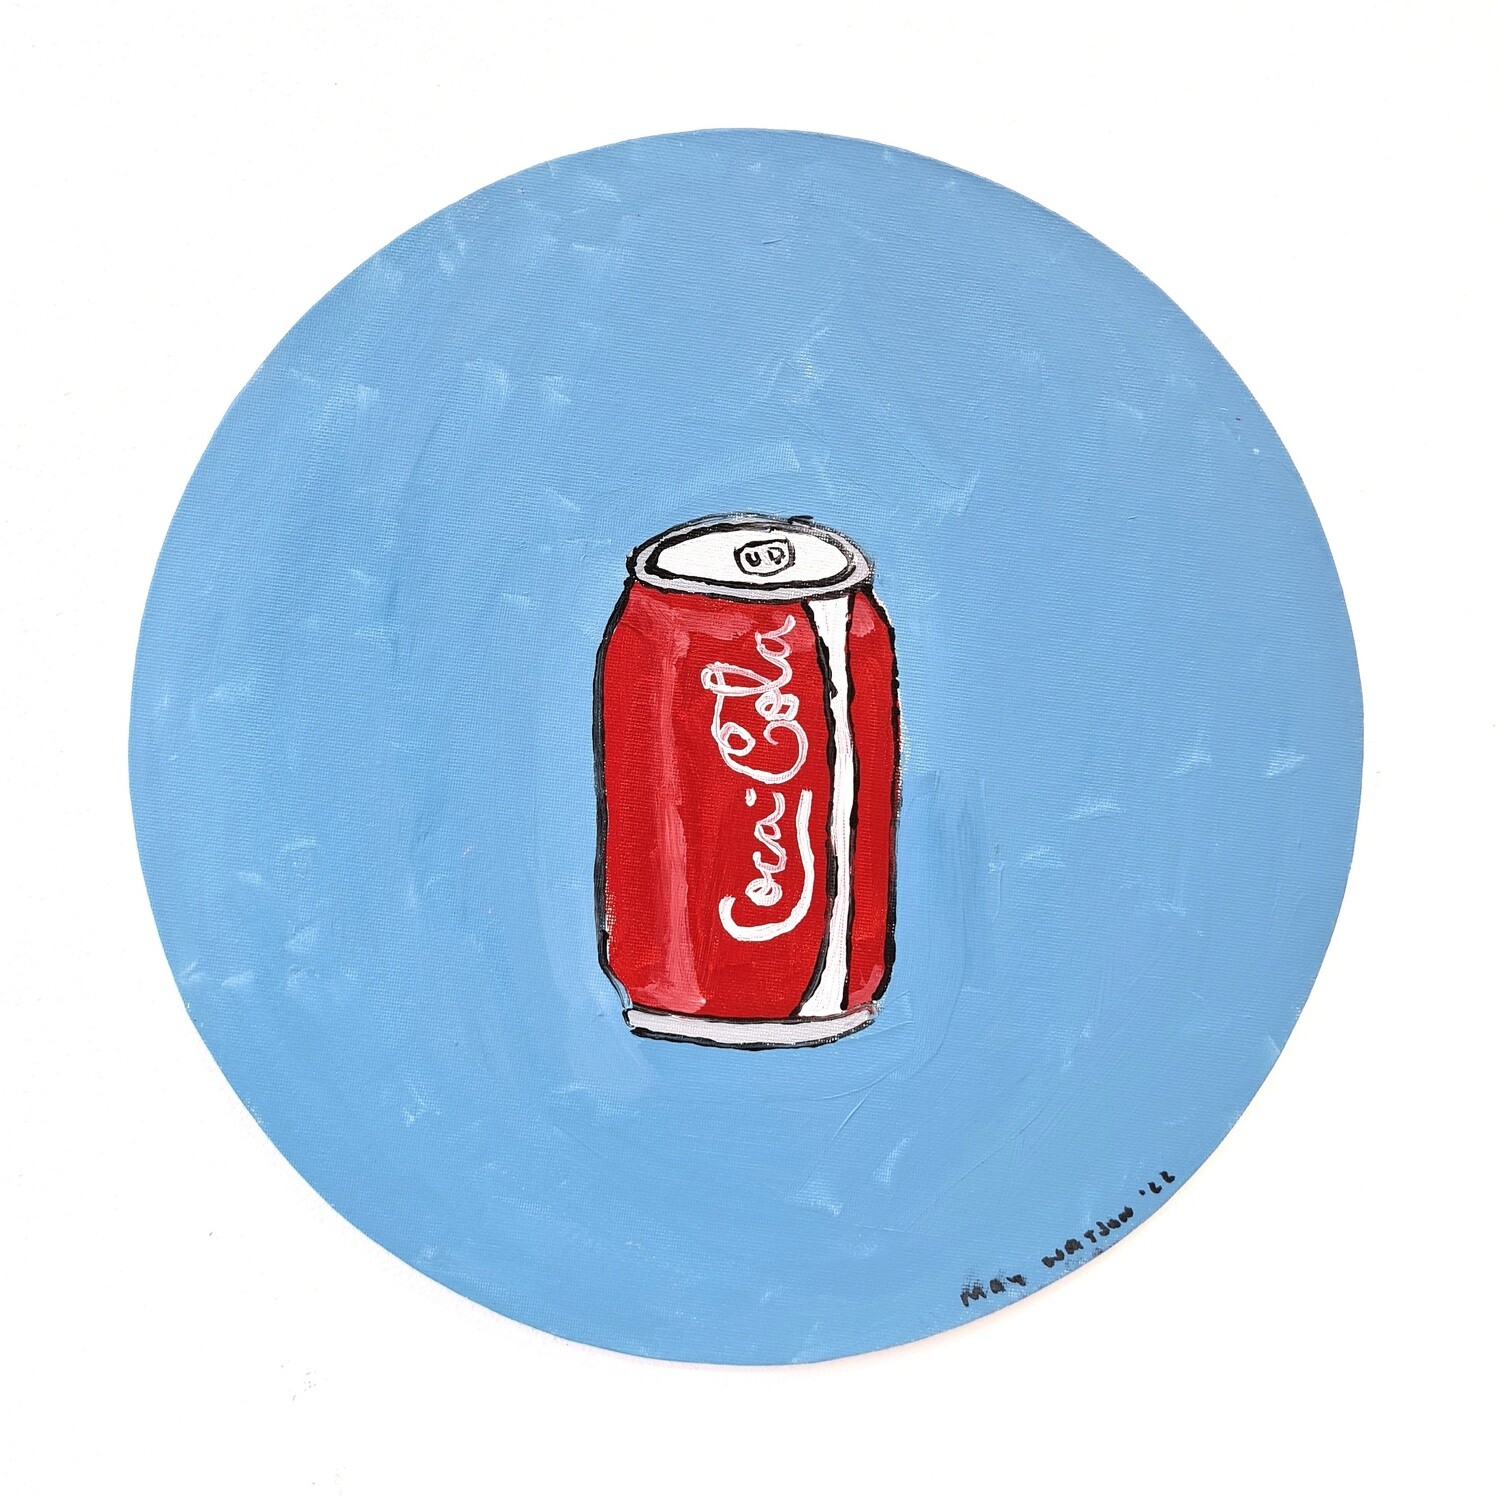 May Watson - Coca Cola 2 (Circle)